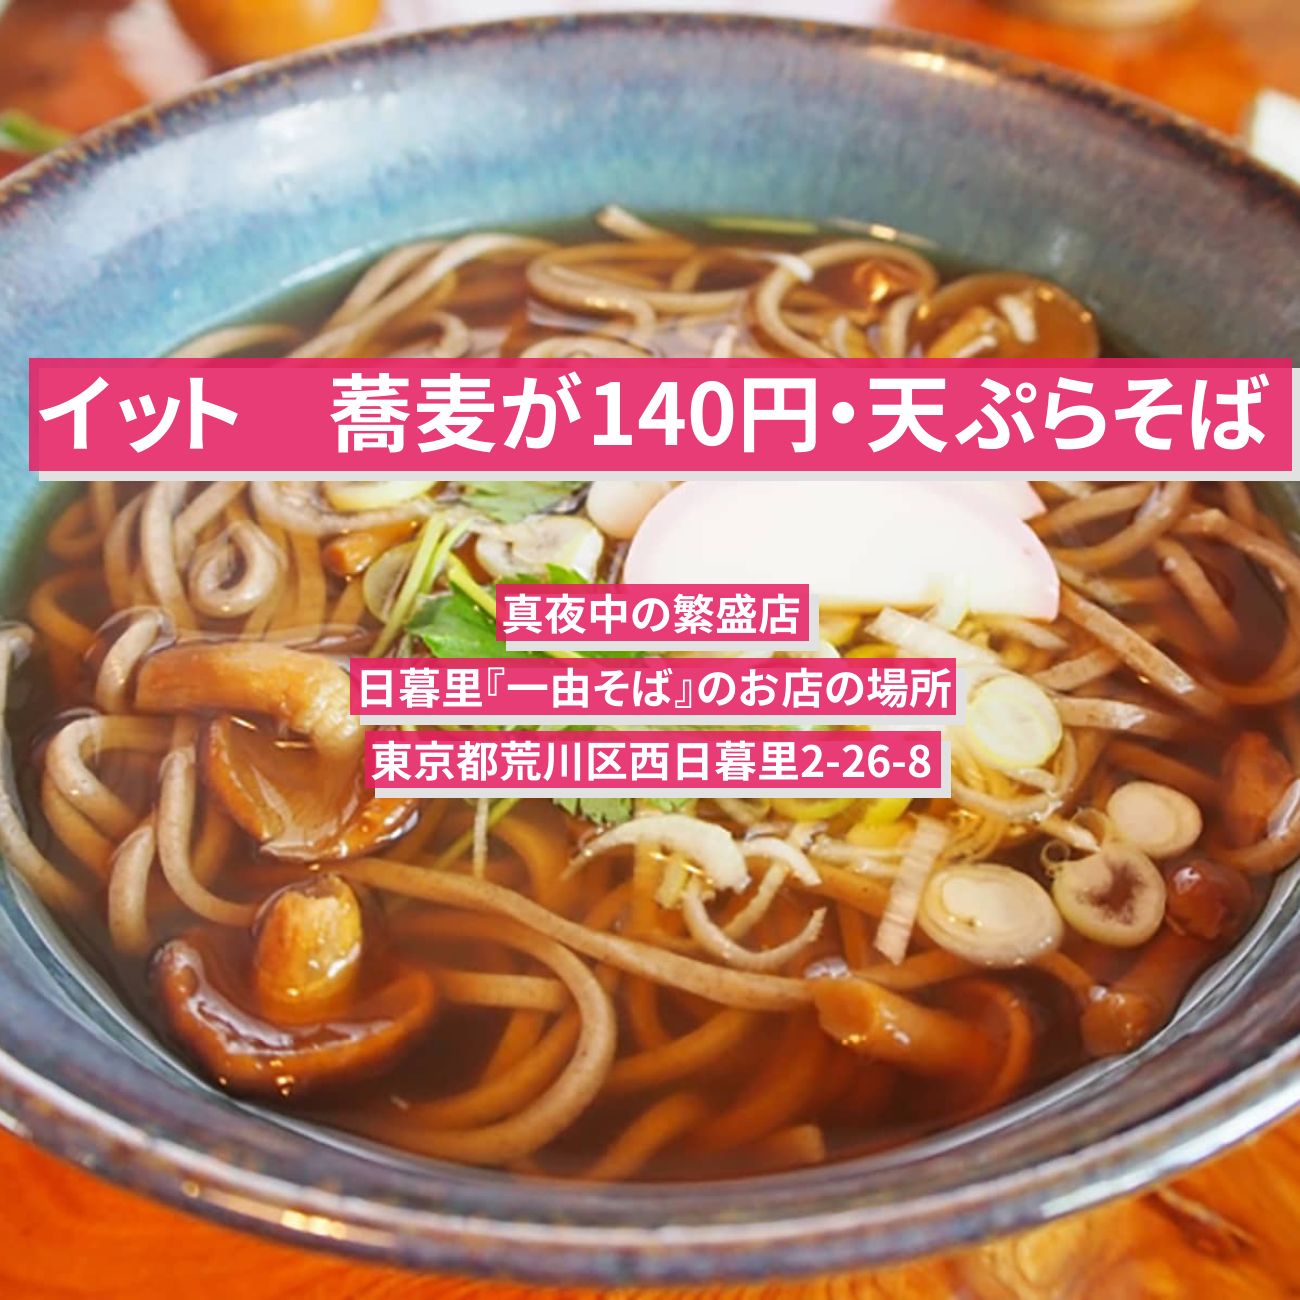 【イット】蕎麦が140円・天ぷらそば（真夜中の繁盛店）日暮里『一由そば』のお店の場所